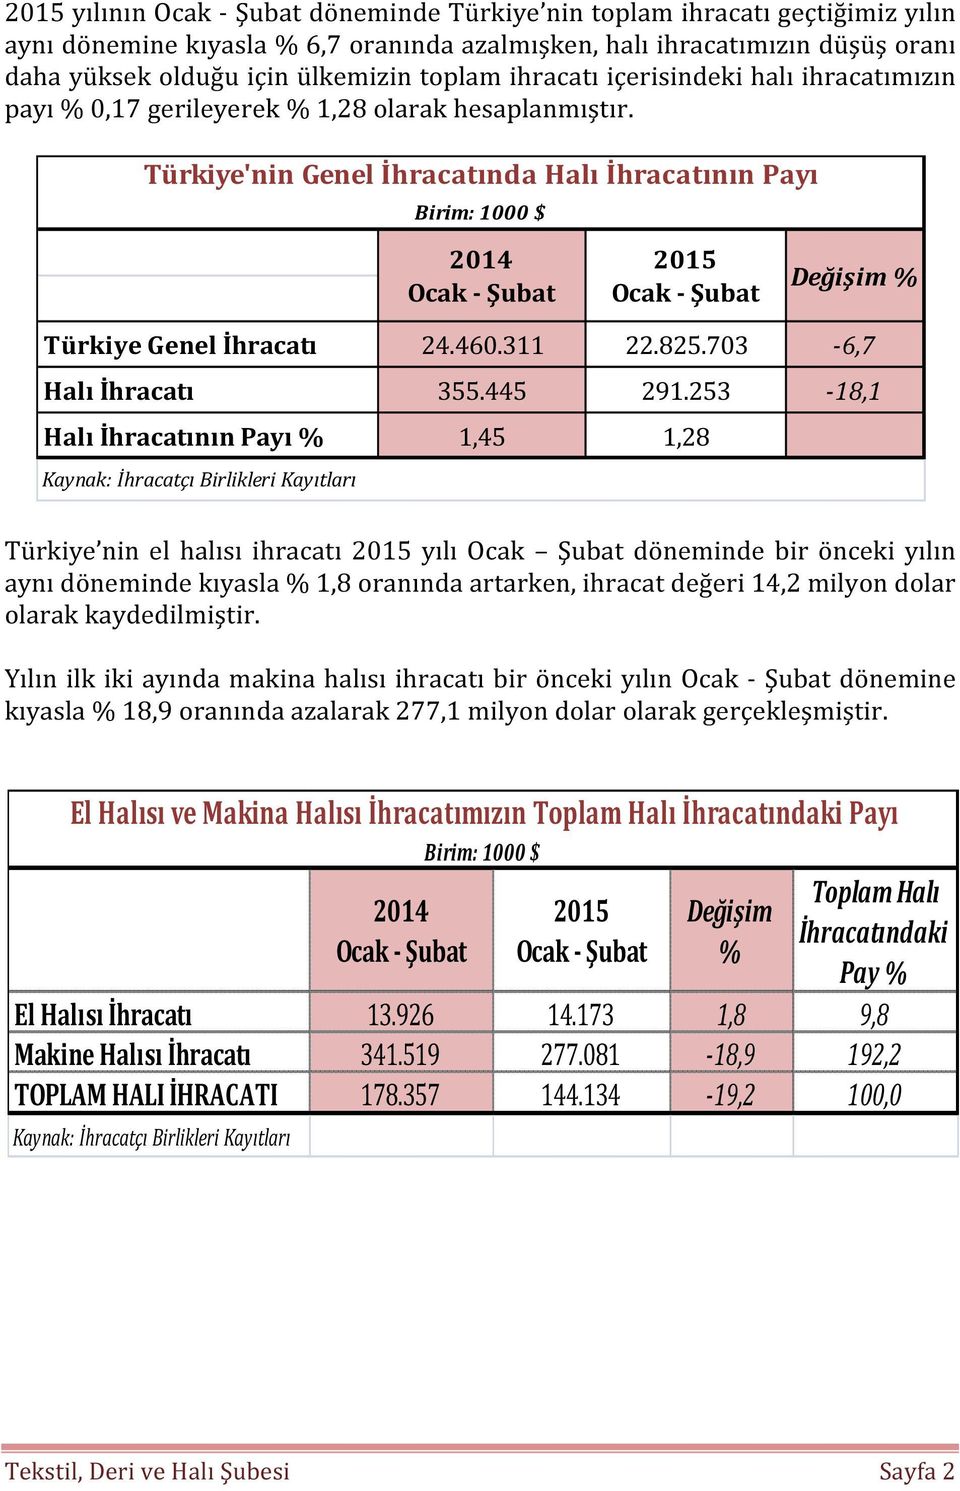 Türkiye'nin Genel İhracatında Halı İhracatının Payı Birim: 1000 $ 2014 Ocak - Şubat 2015 Ocak - Şubat Değişim % Türkiye Genel İhracatı 24.460.311 22.825.703-6,7 Halı İhracatı 355.445 291.